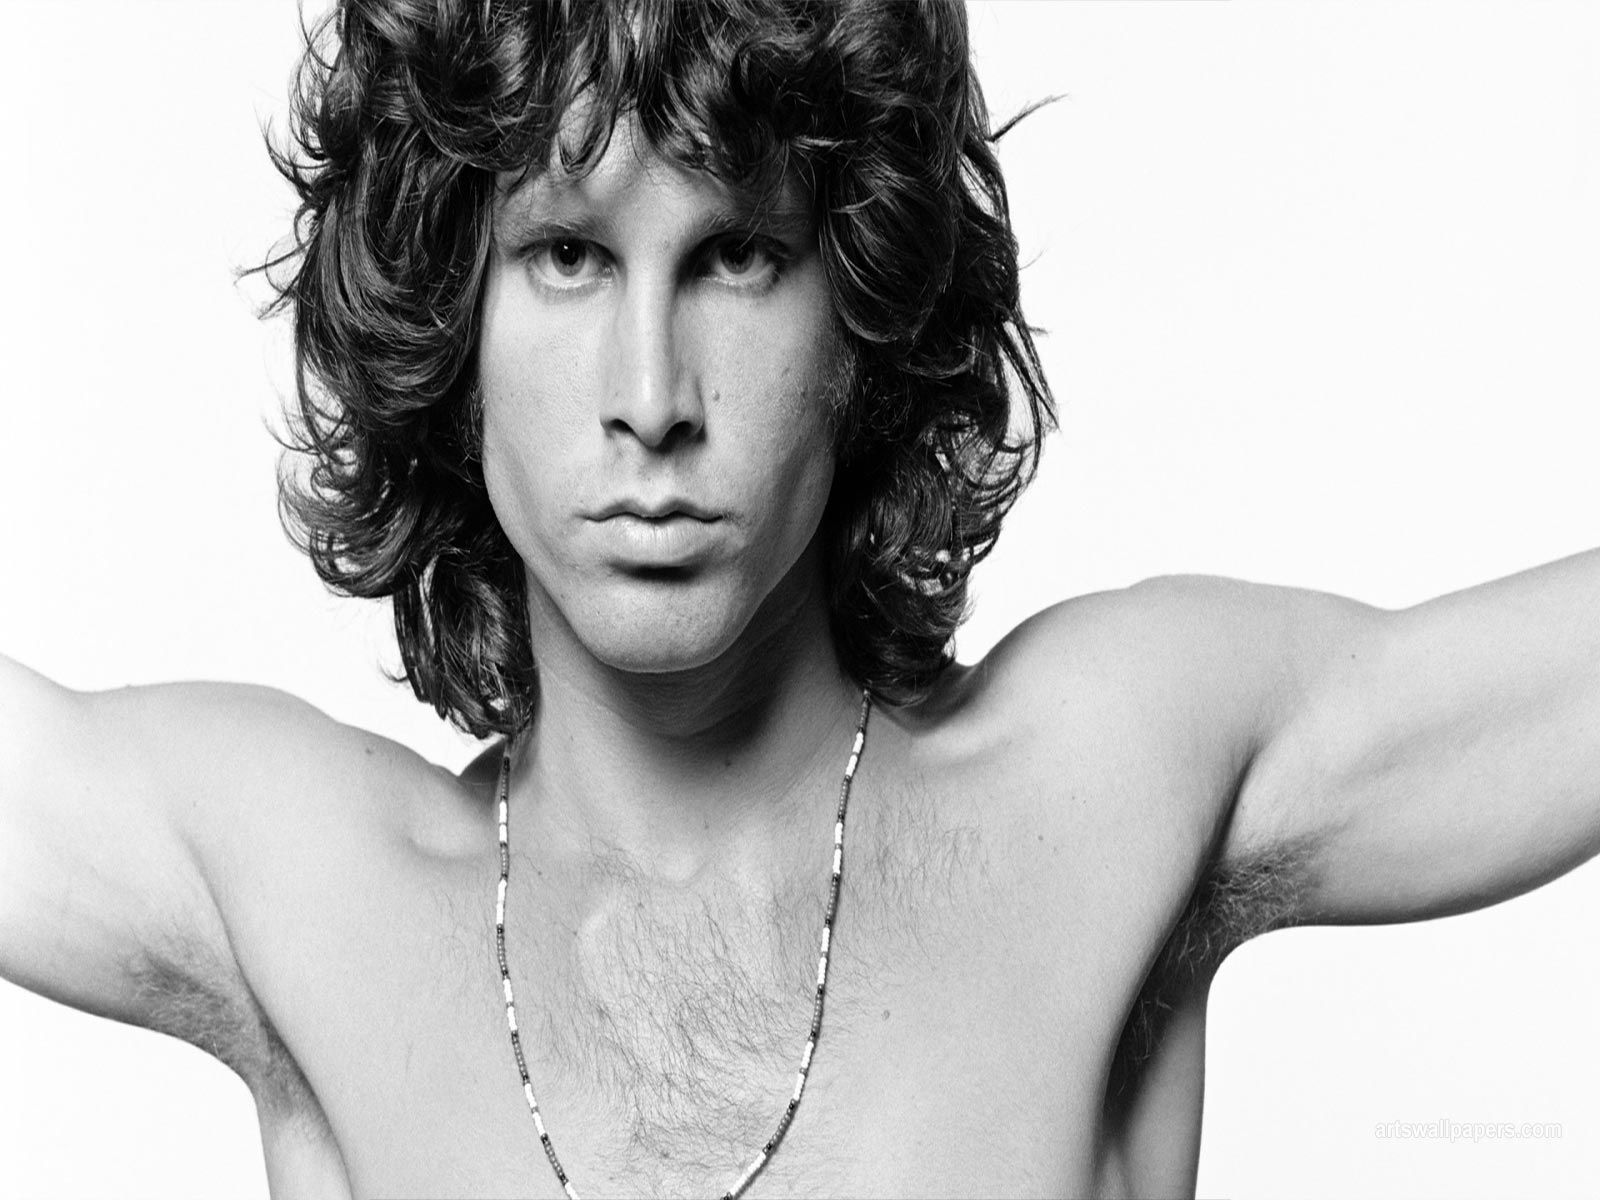 The Doors Wallpaper Jim Morrison